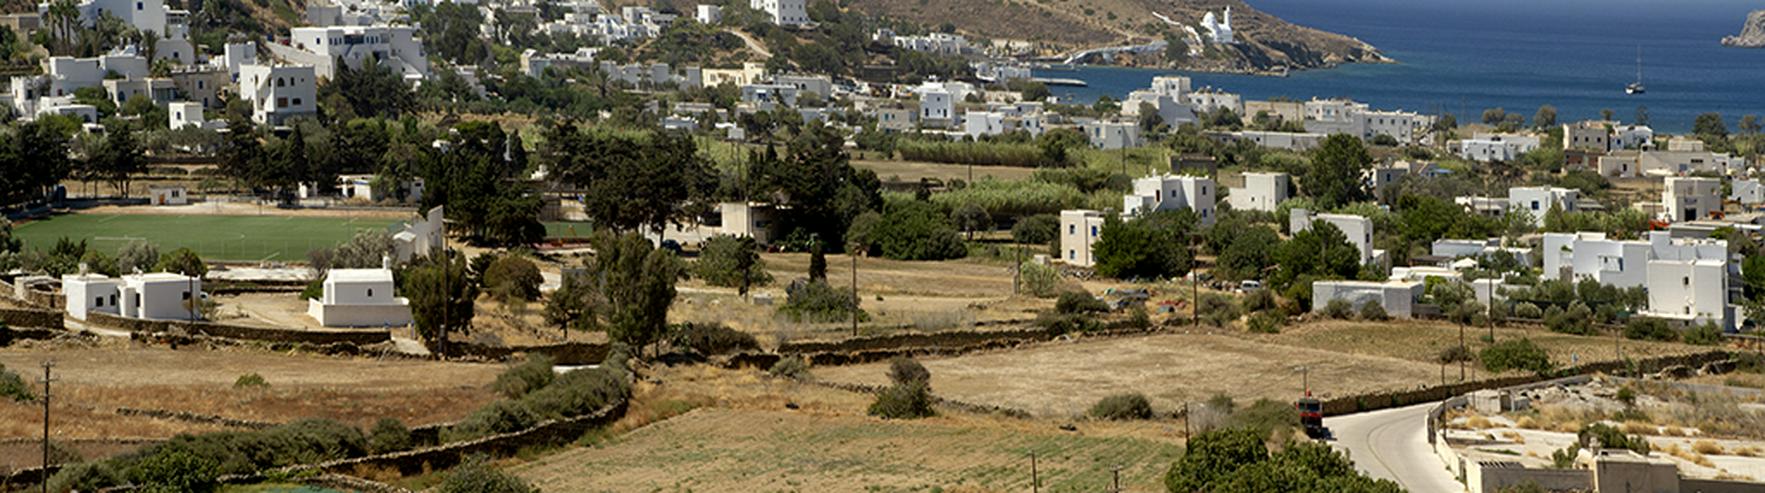 Traumwohnung auf griechische Insel -IOS- mit Blick aufs Meer (600m) und 107m2 - Wohnung kaufen - Bild 2